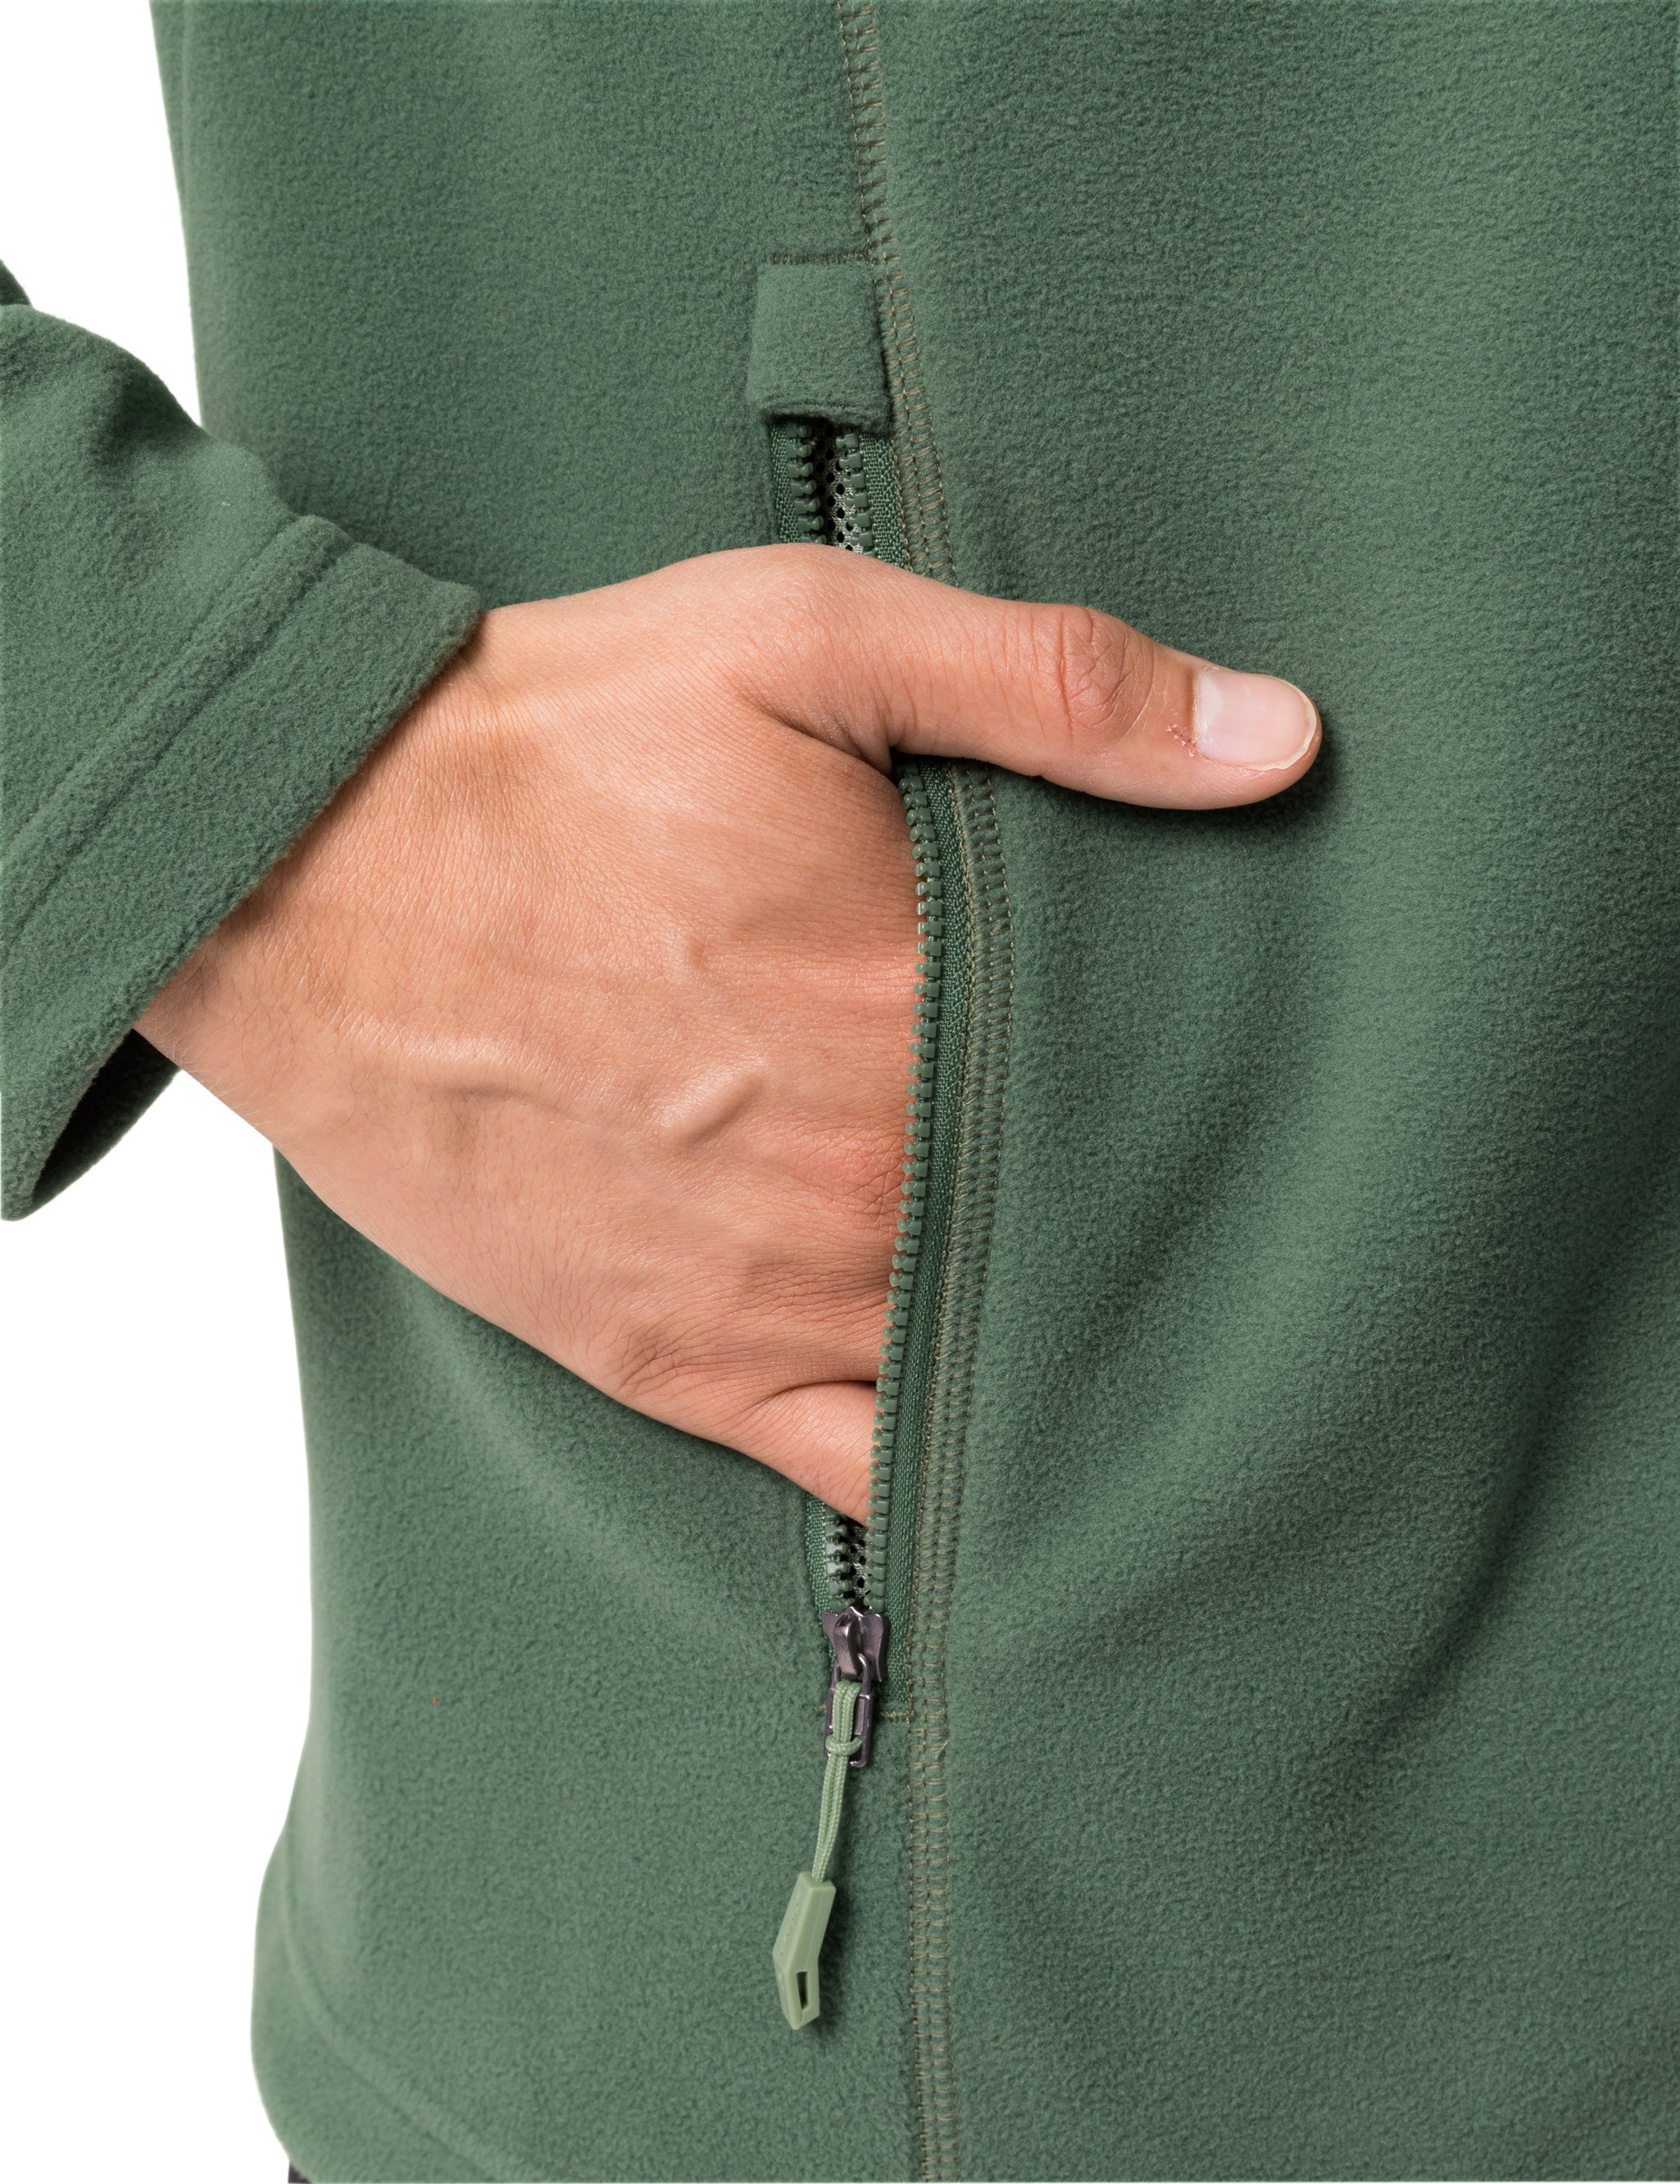 VAUDE Outdoorjacke Men's (1-St) Rosemoor Jacket Fleece II kompensiert woodland Klimaneutral